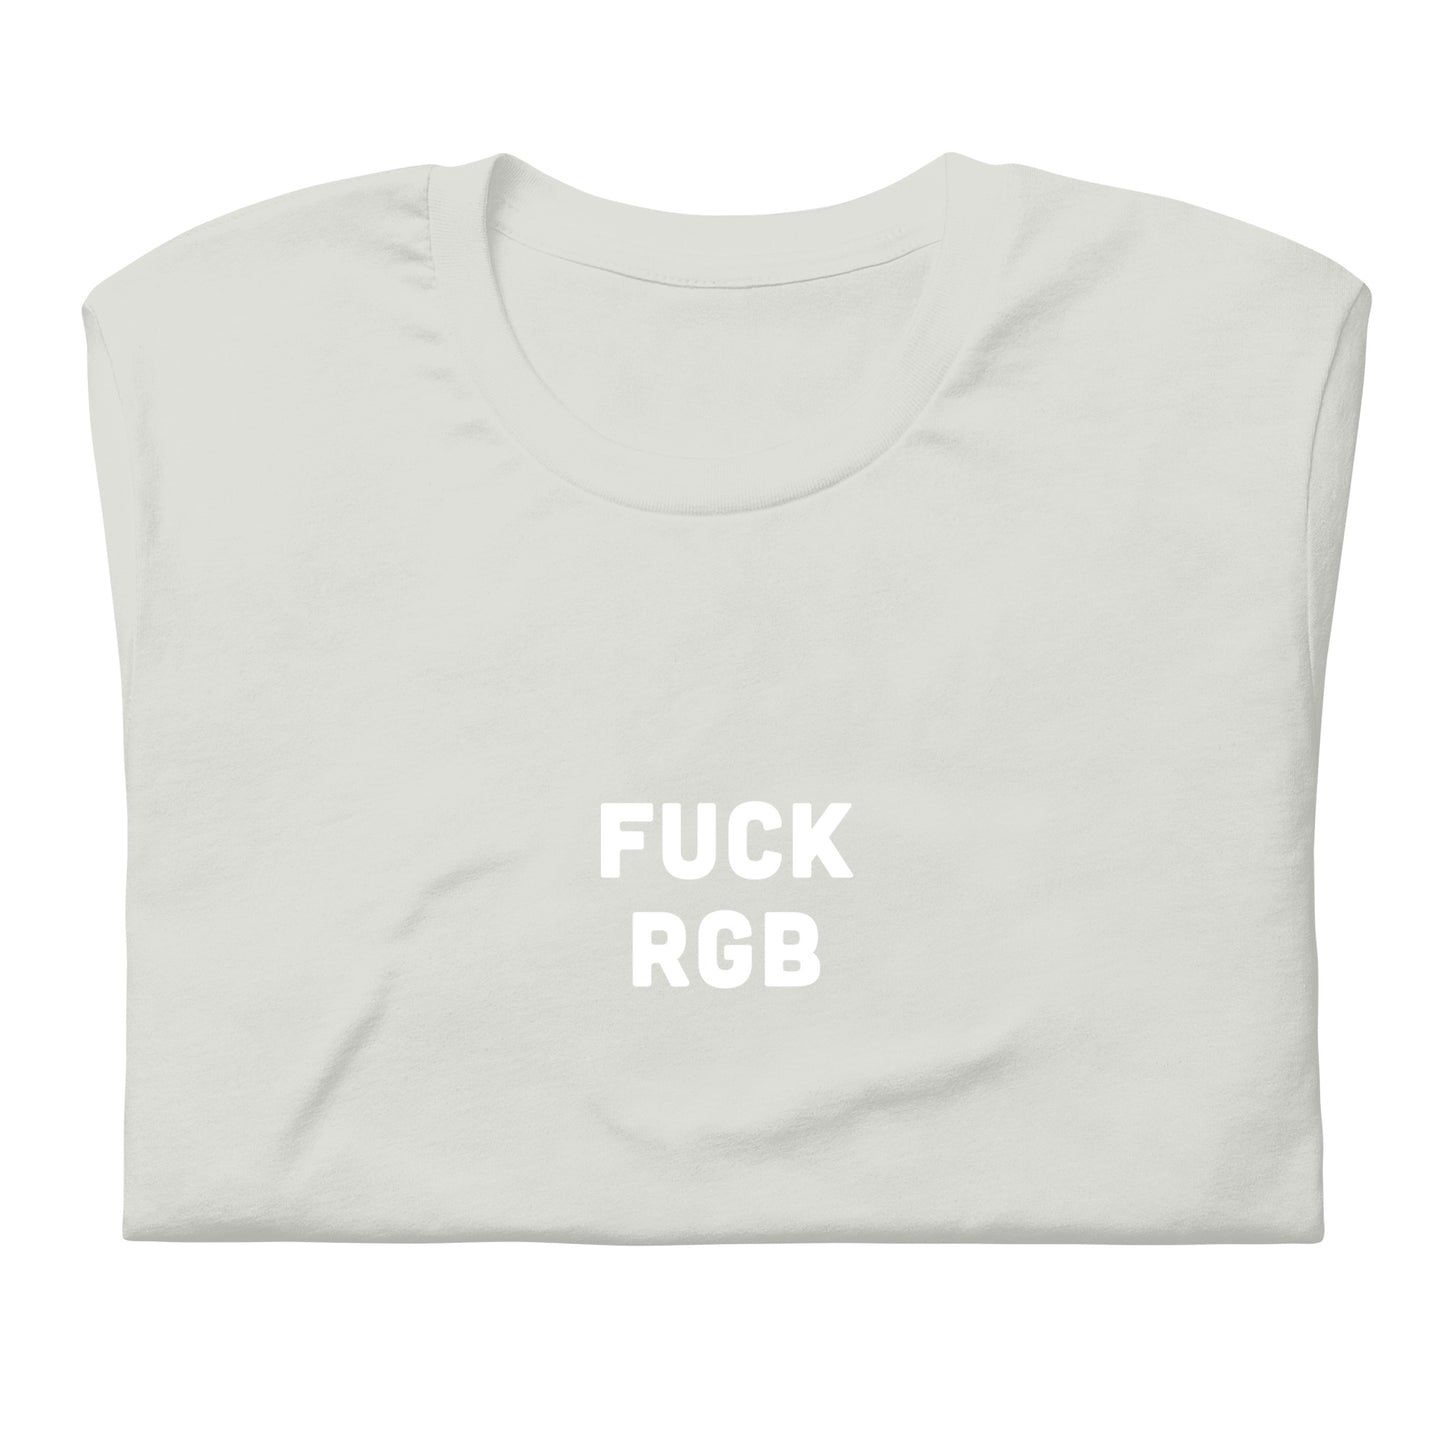 Fuck Rgb T-Shirt Size 2XL Color Asphalt